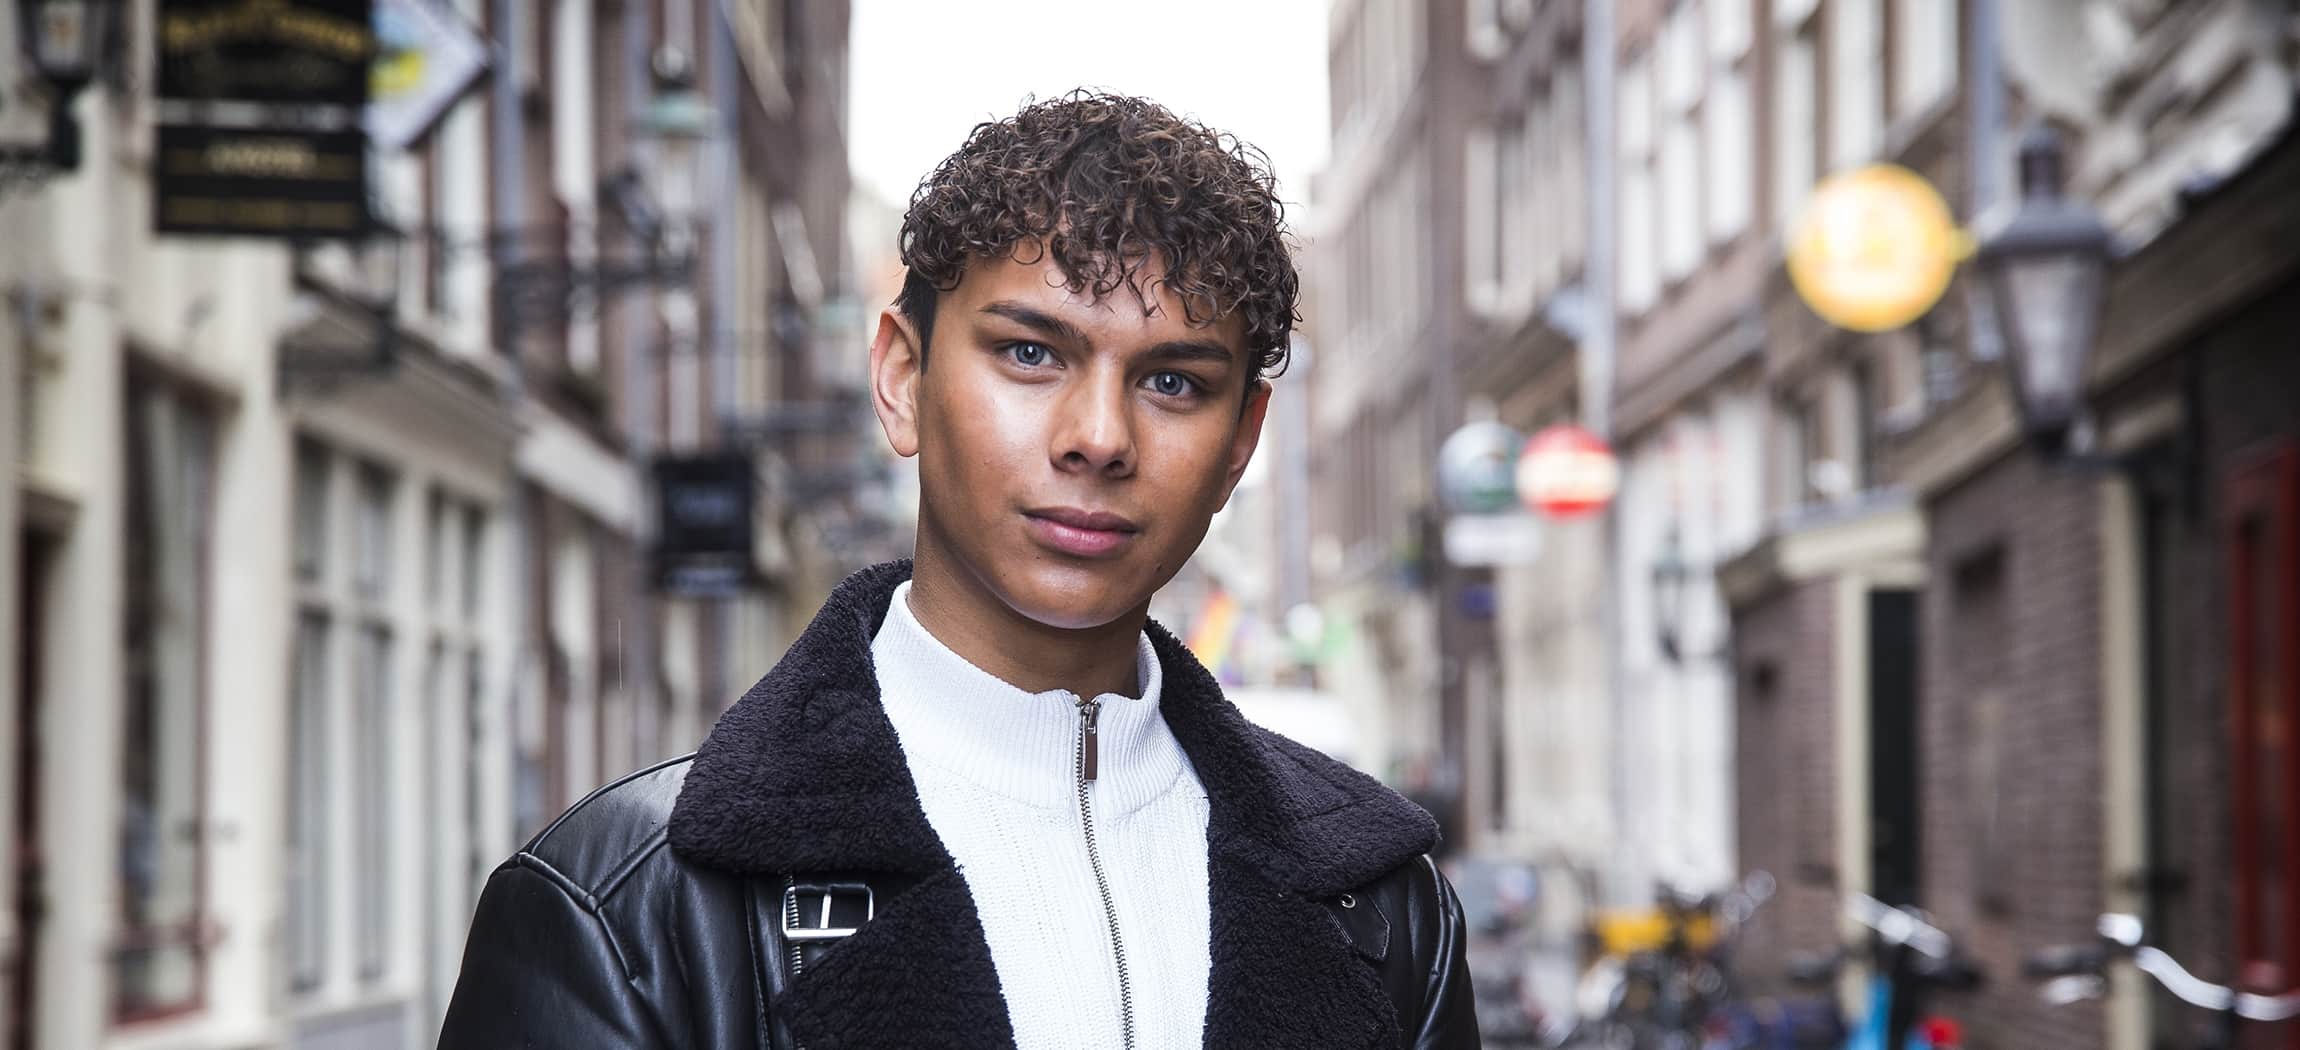 Student Jairo staat in een straat in Amsterdam en kijkt in de camera